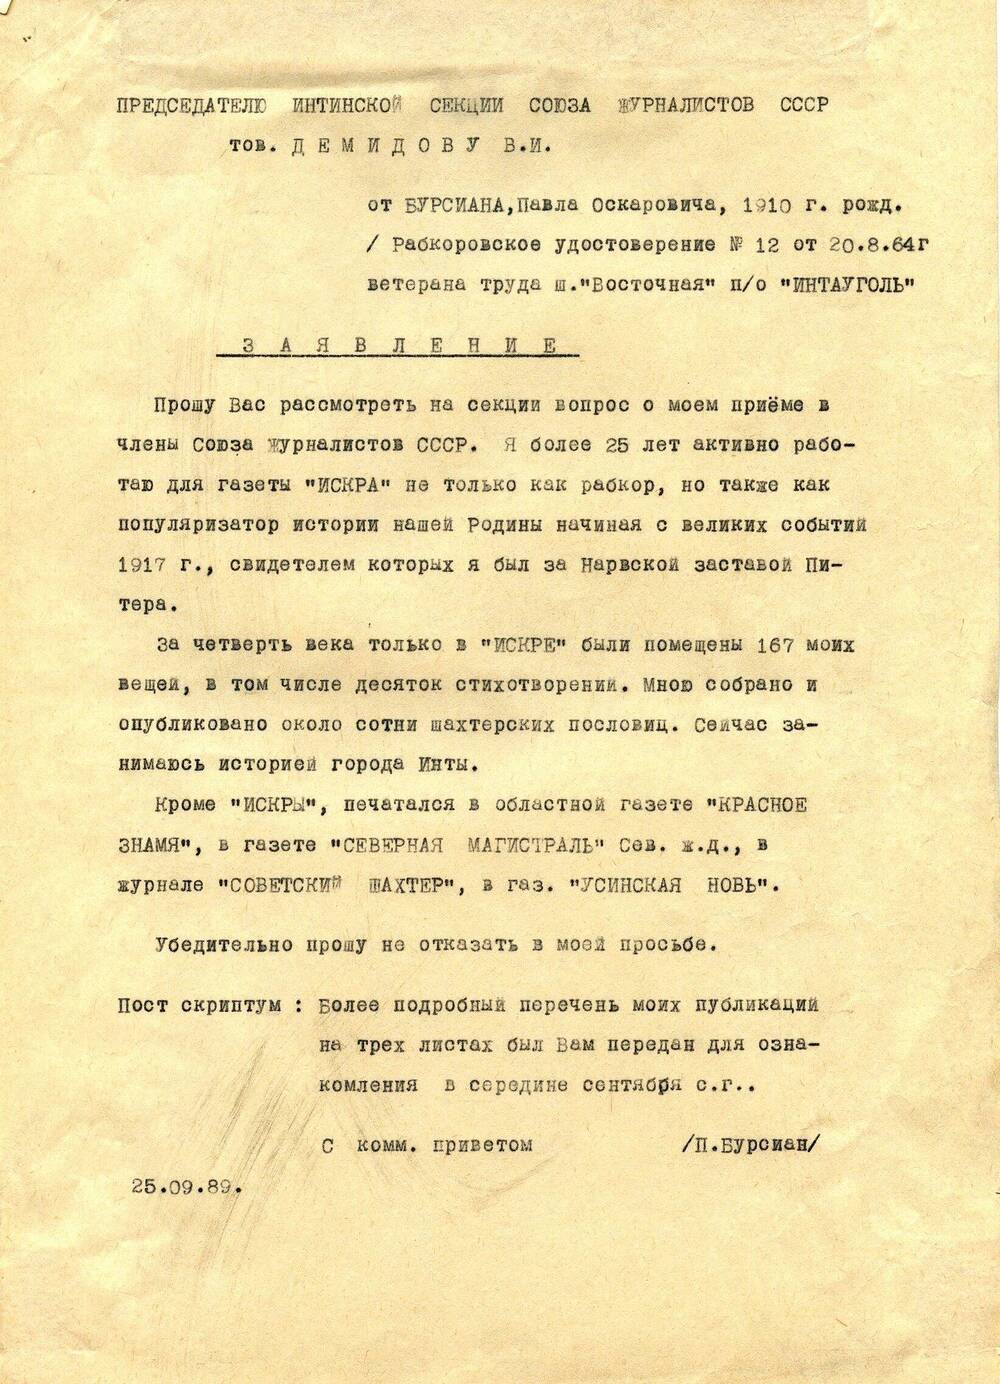 Документ Заявление Бурсиана Павла Оскаровича о приеме в члены Союза журналистов СССР